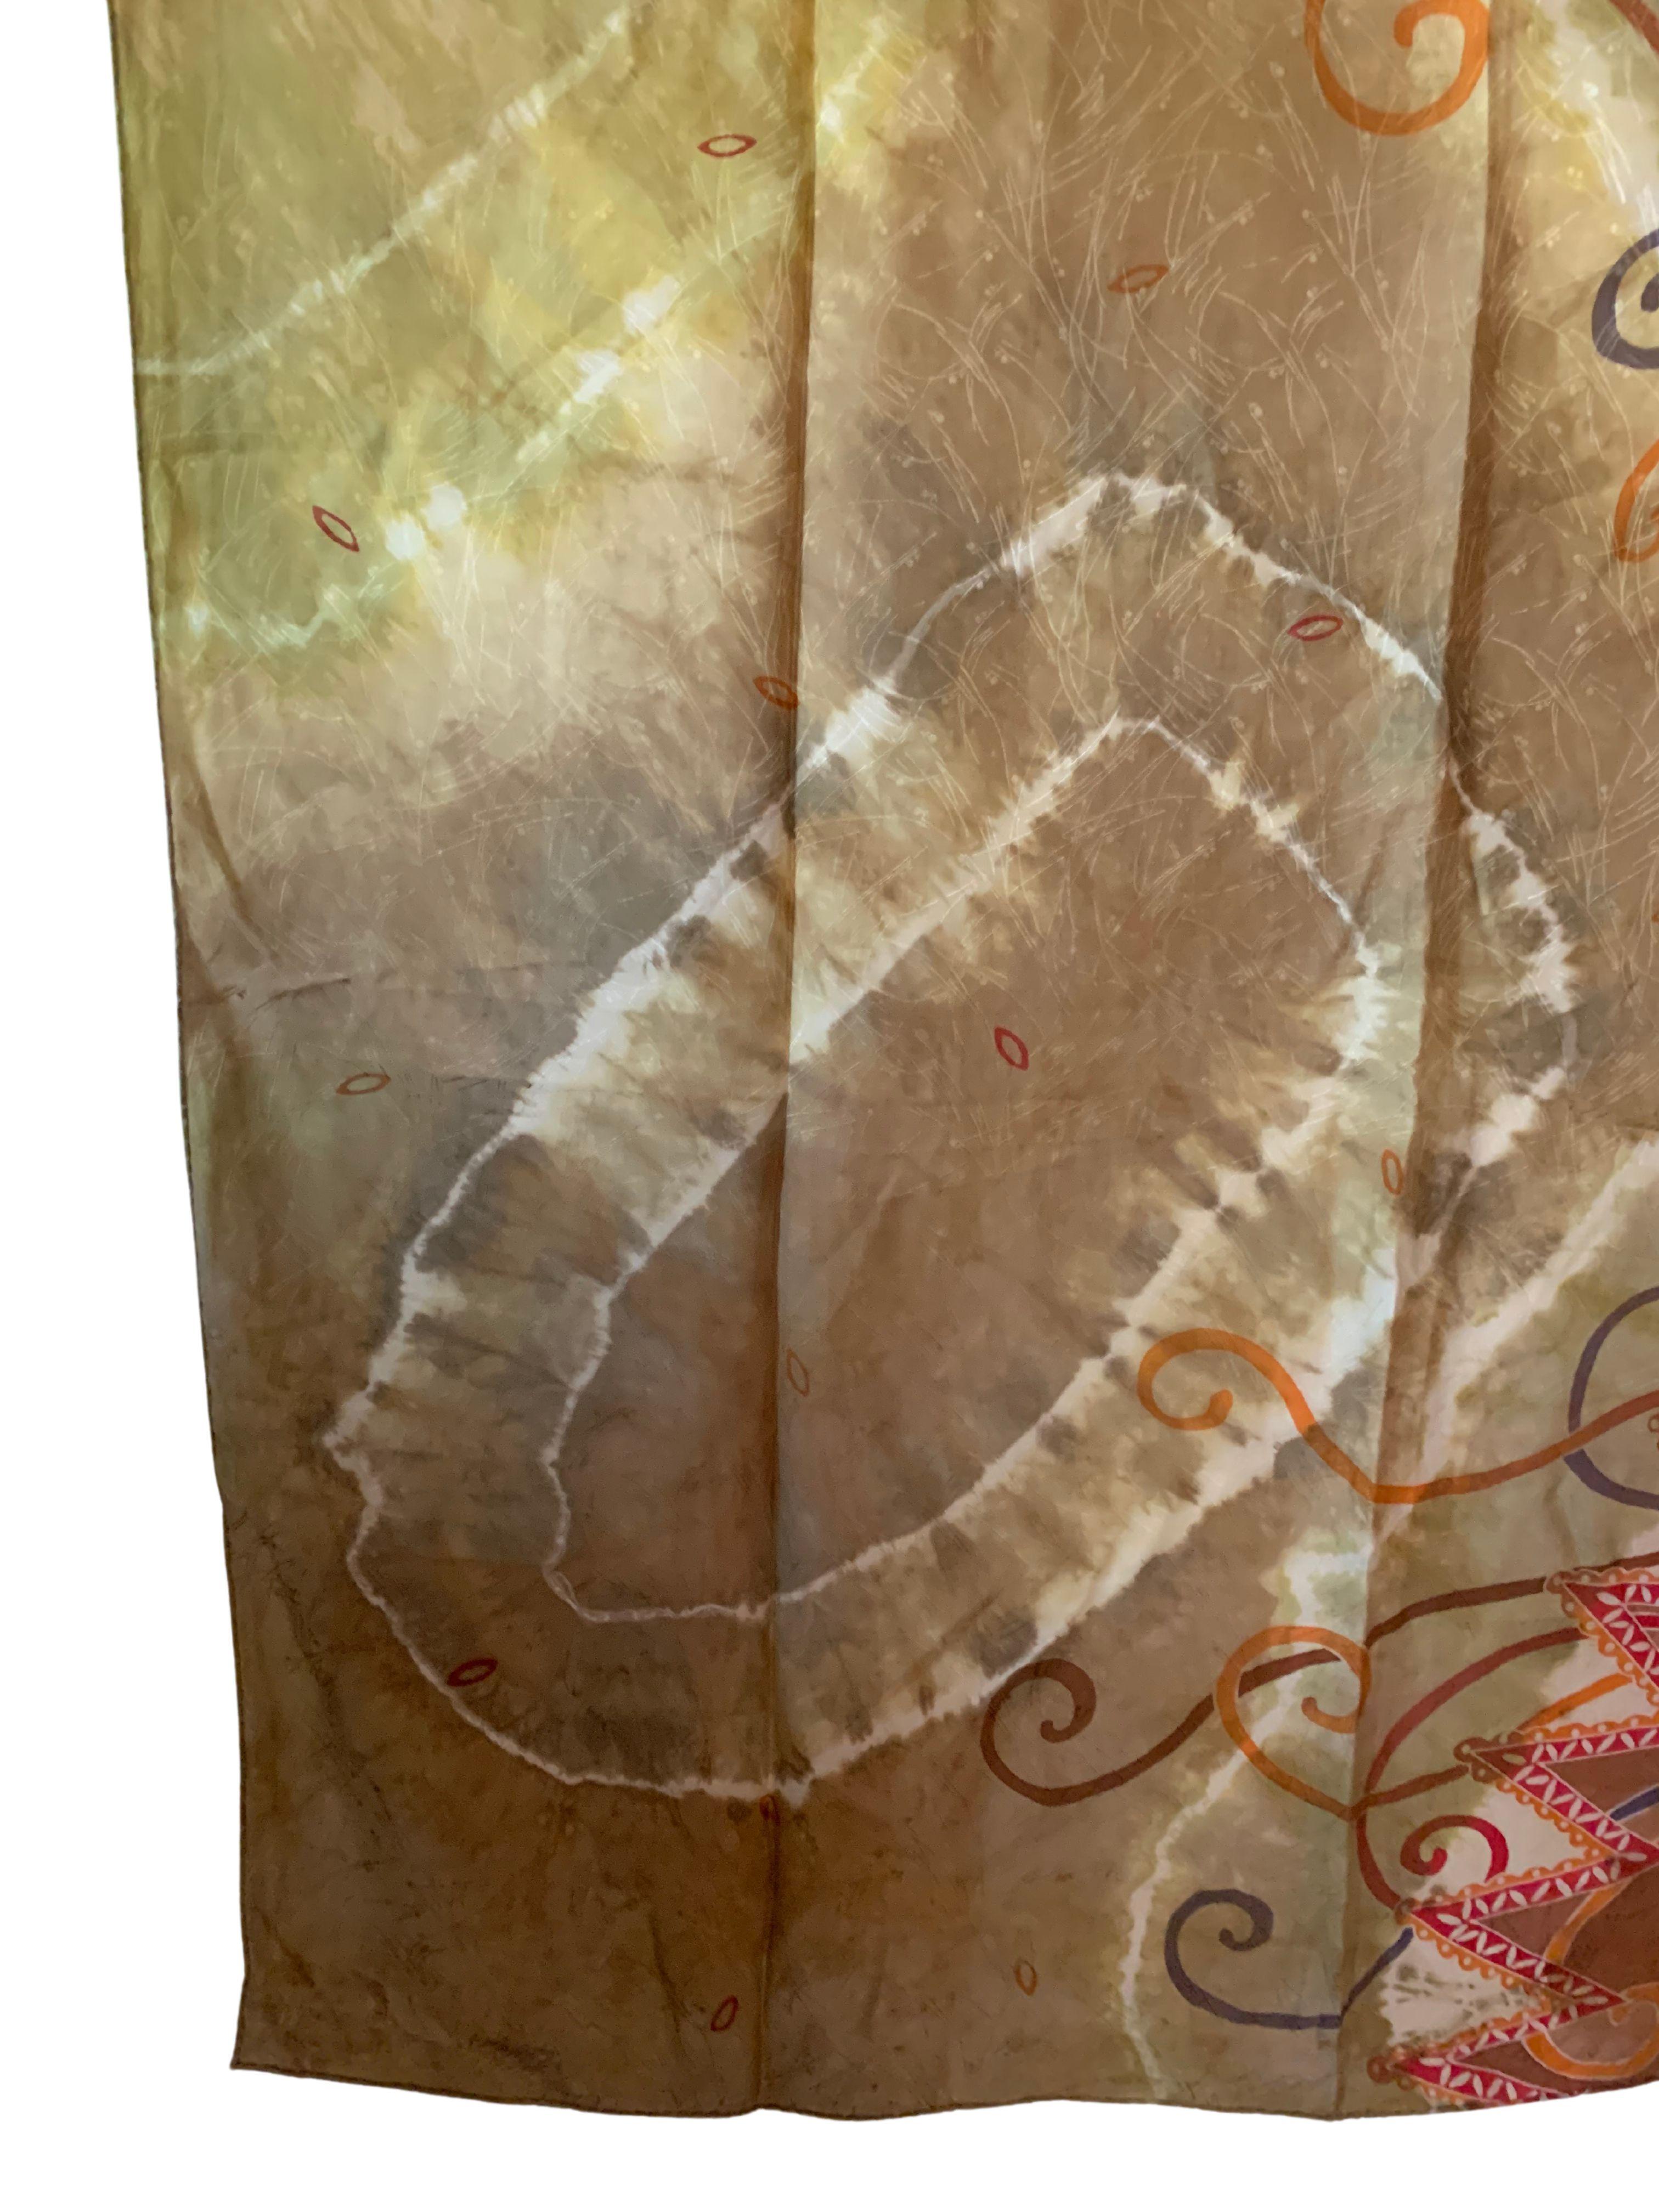 Ein wunderschönes handgefertigtes Shantung-Seidentextil aus Malaysia mit atemberaubenden Details und Schattierungen. Shantung-Seide ist ein mittelschweres Seidengewebe in Leinwandbindung, das aus unregelmäßigen Fäden gewebt wird und daher eine raue